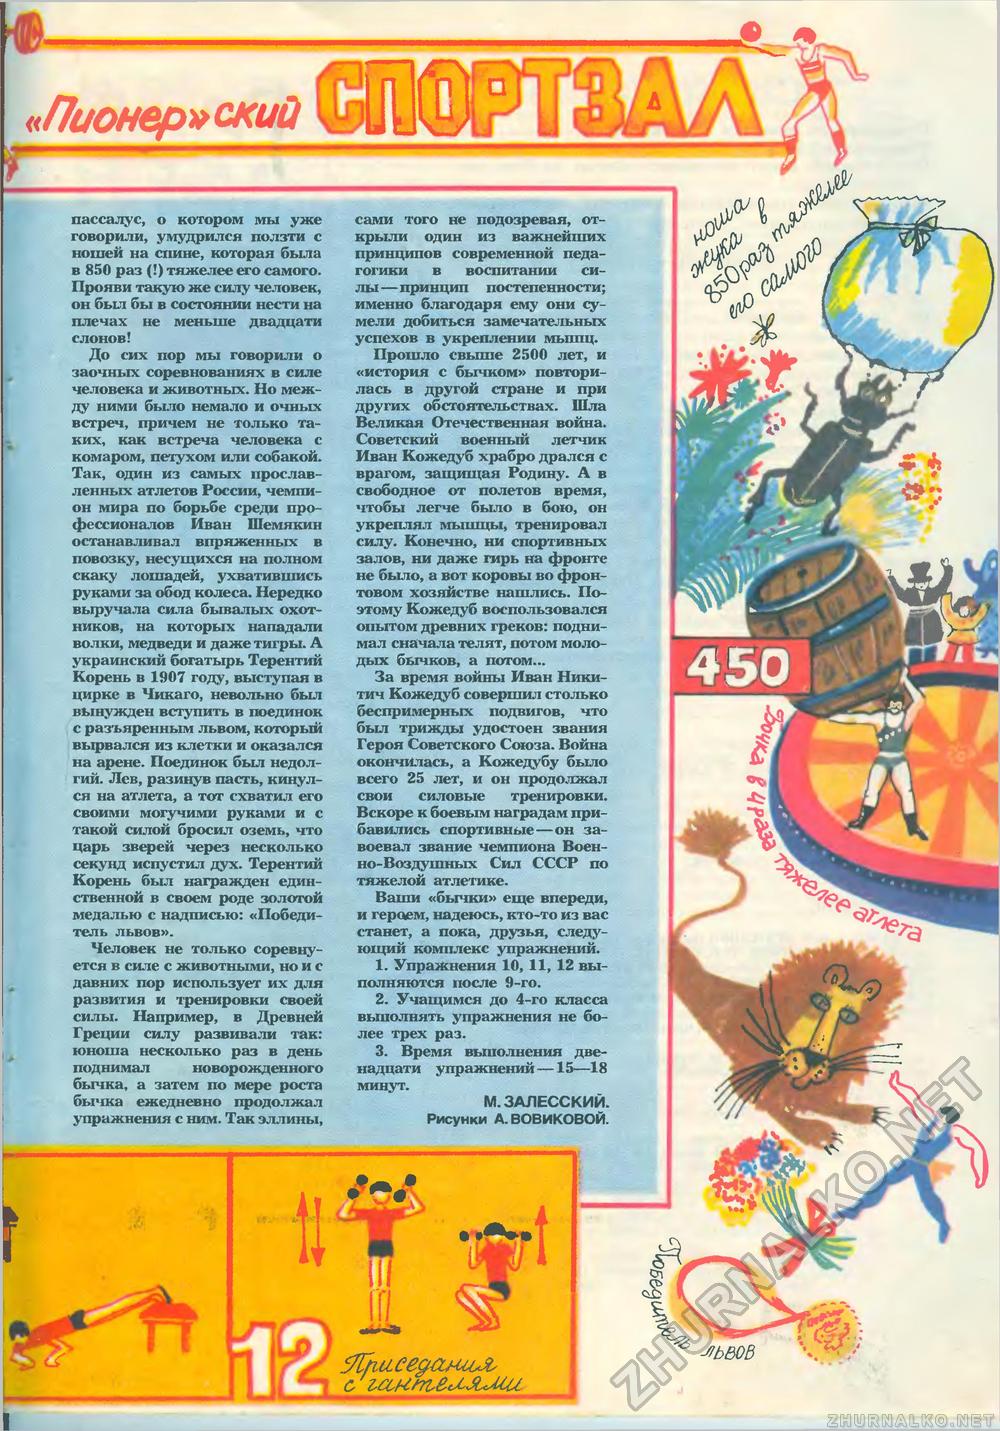  1986-11,  65